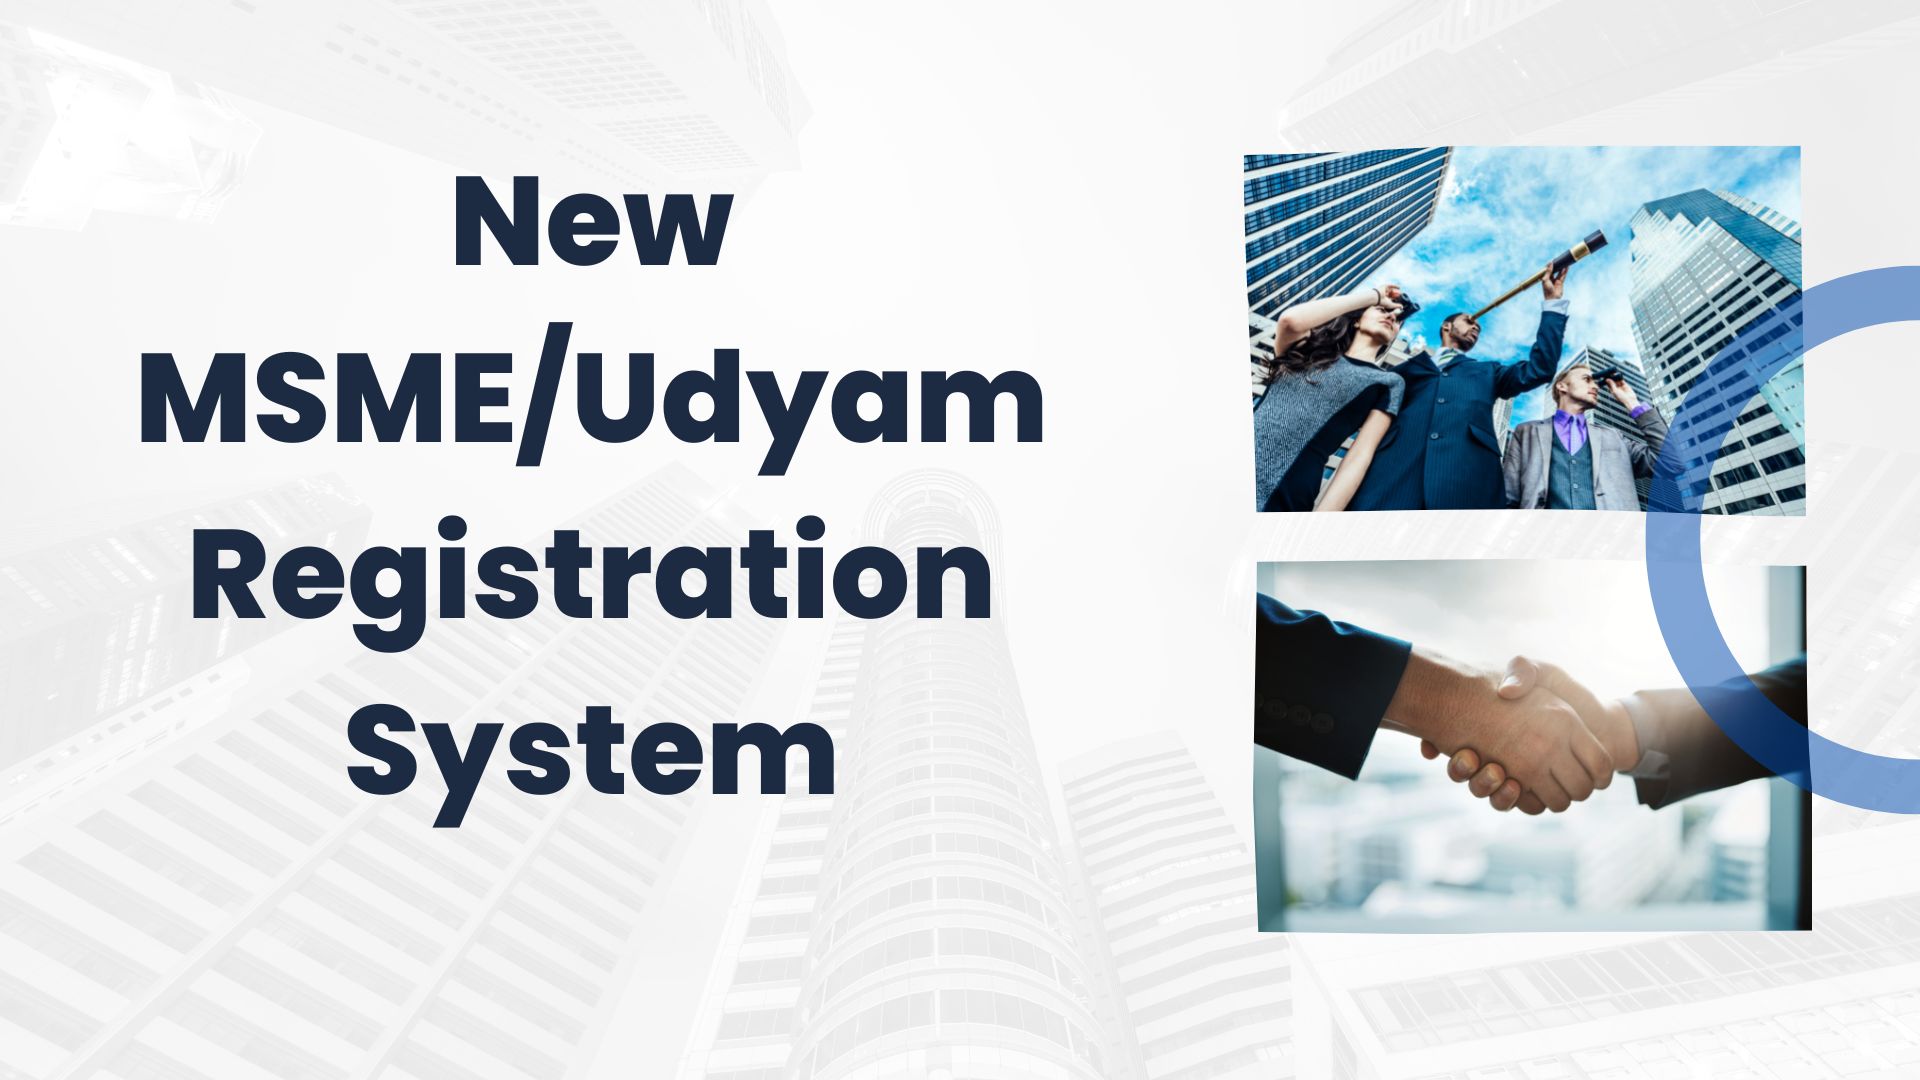 New MSME/Udyam Registration System